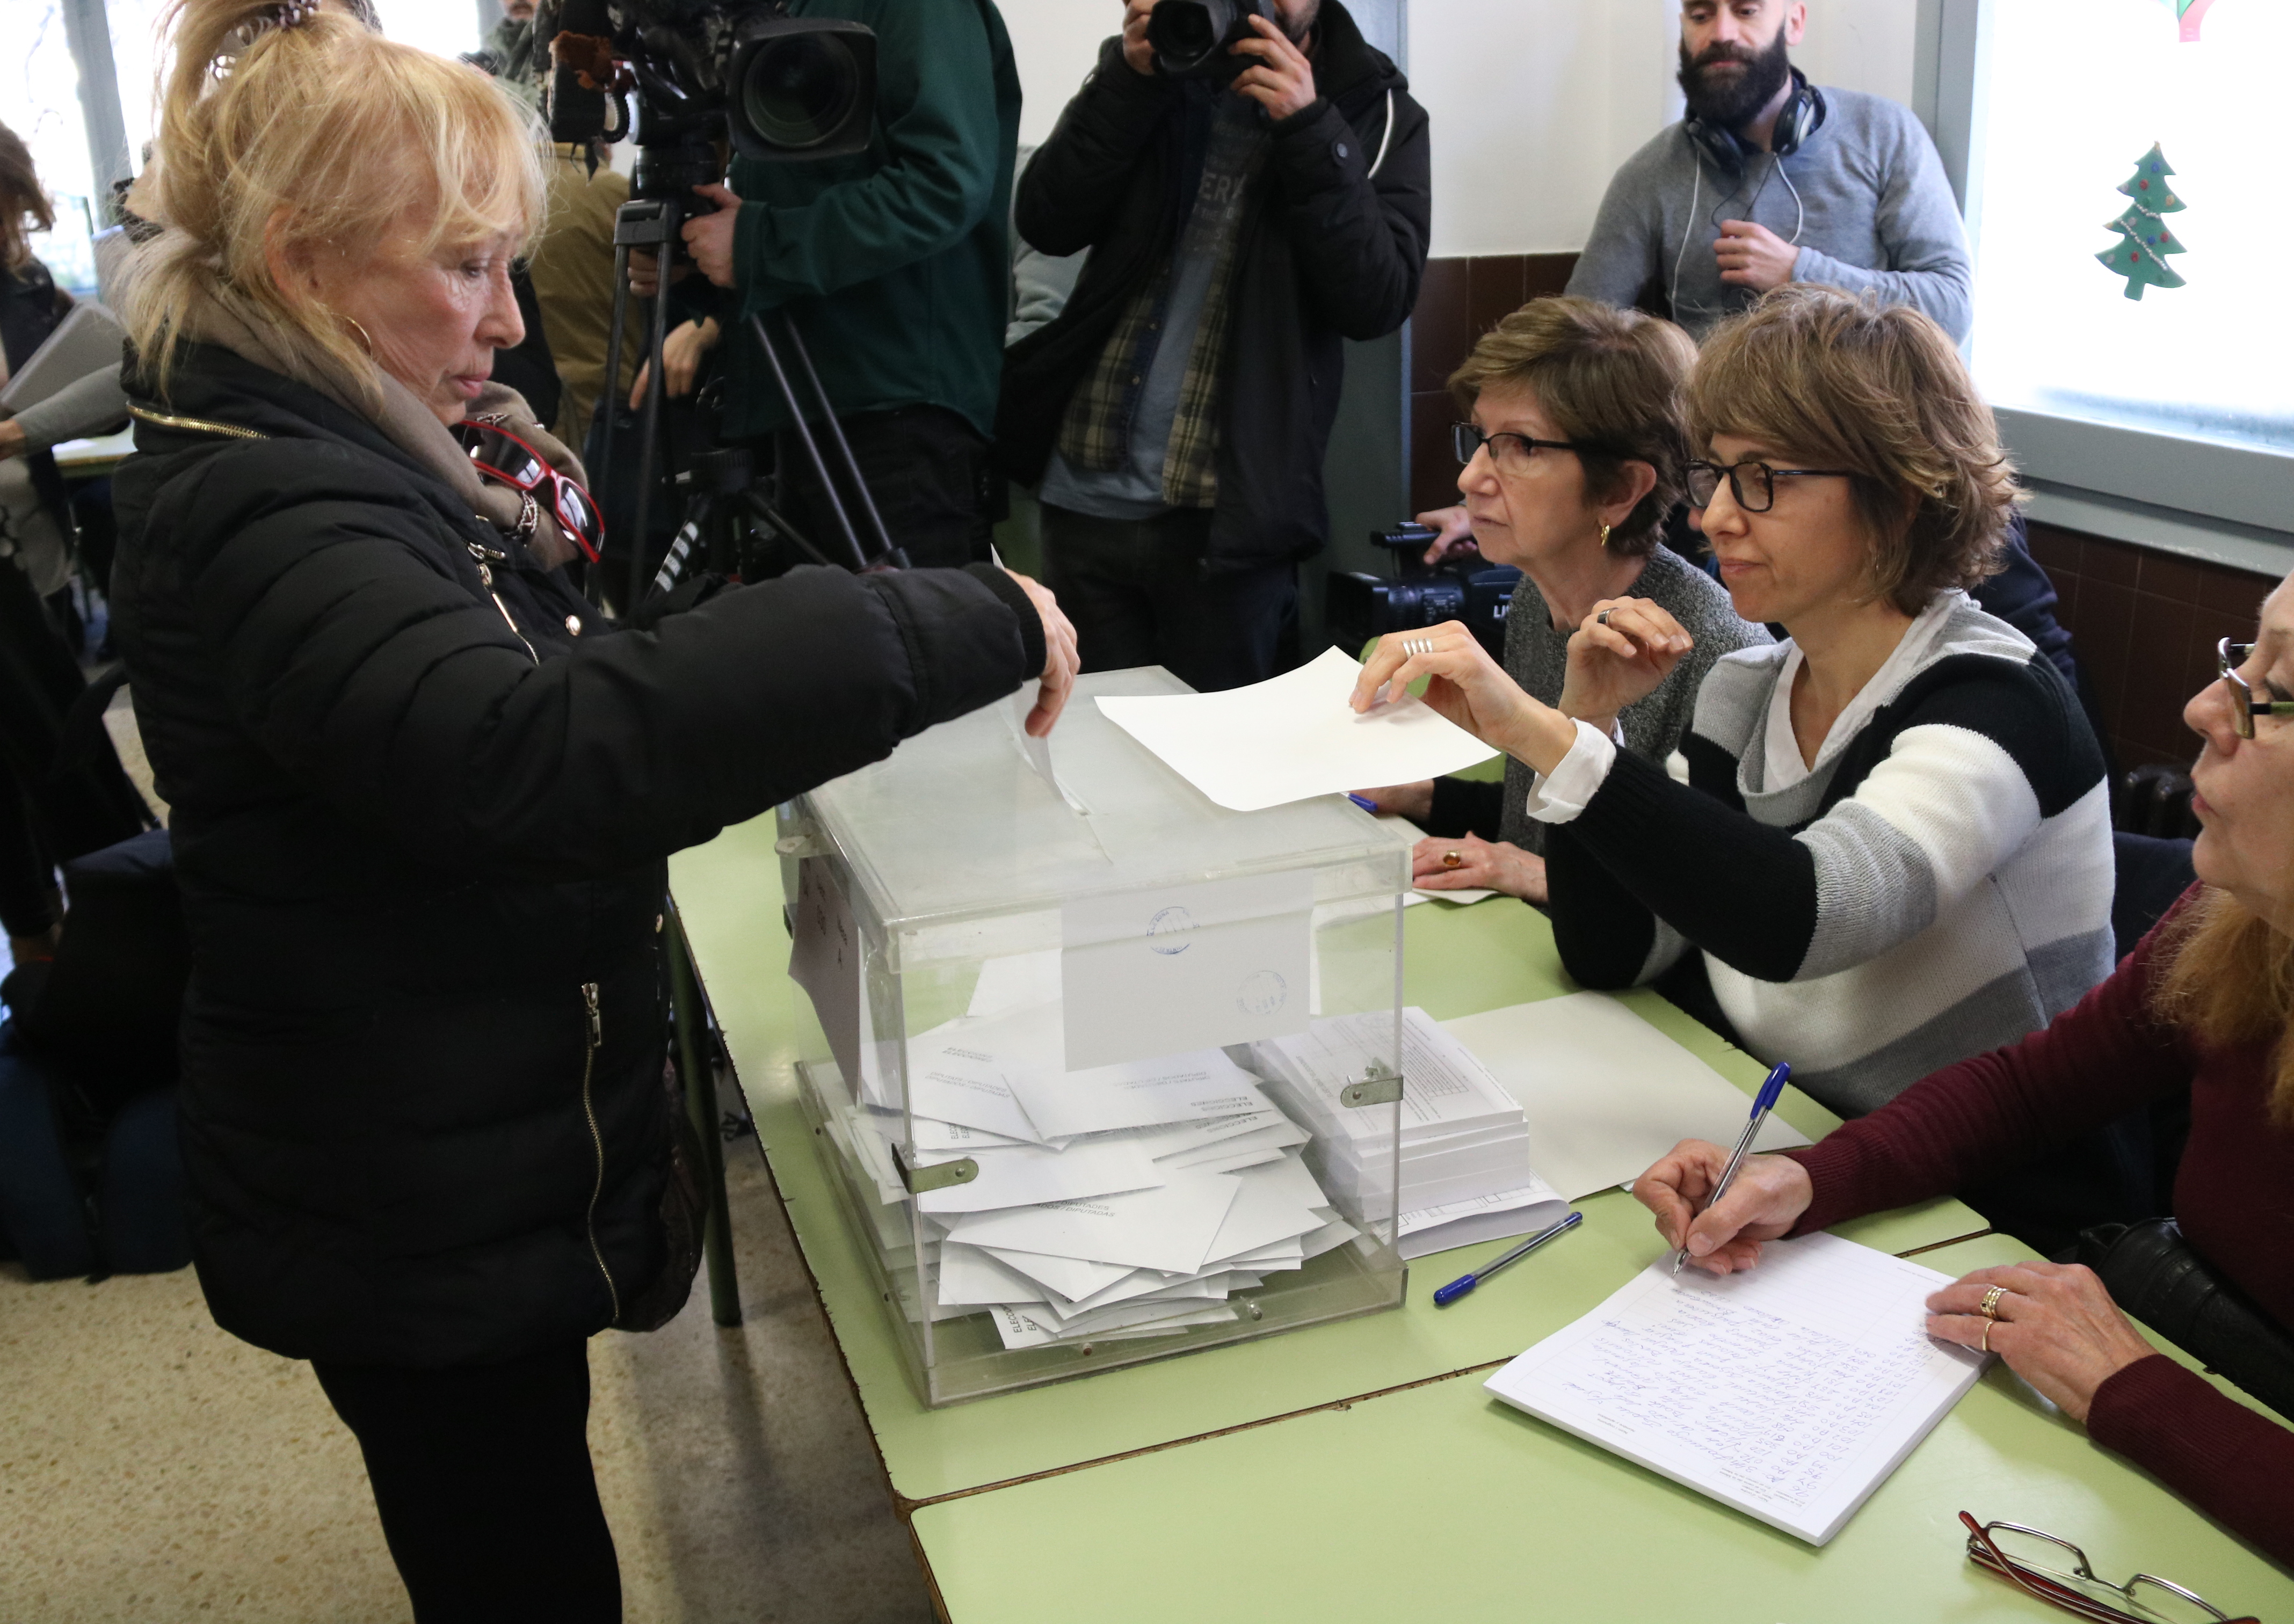 Imatge d'una dona votant a l'escola Àusias Marc de Barcelona, el 21 de desembre de 2017 (fotografia: ACN).